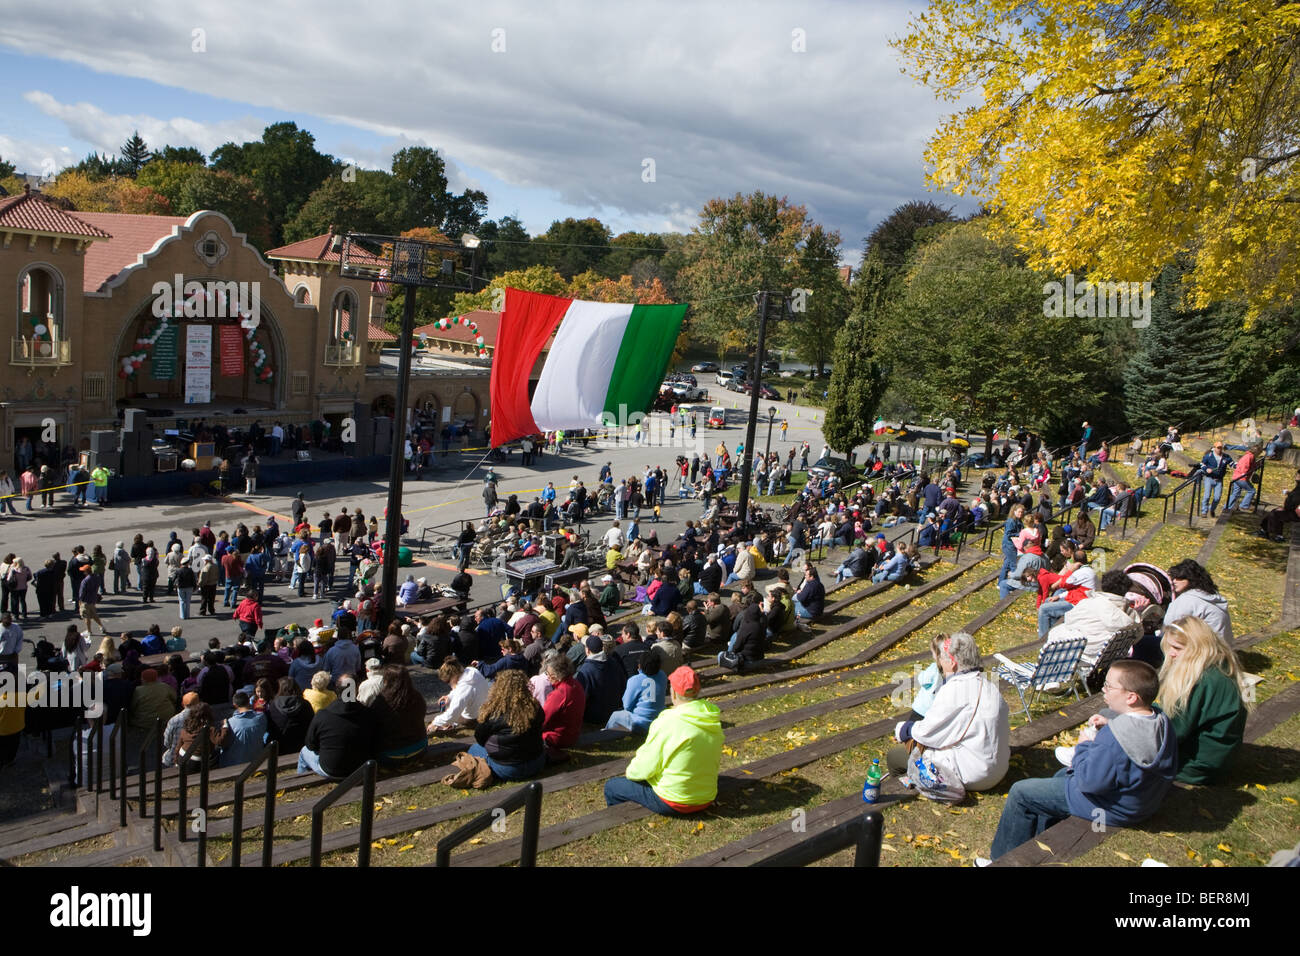 Italian festival draws crowds to Washington Park, Albany, New York Stock Photo